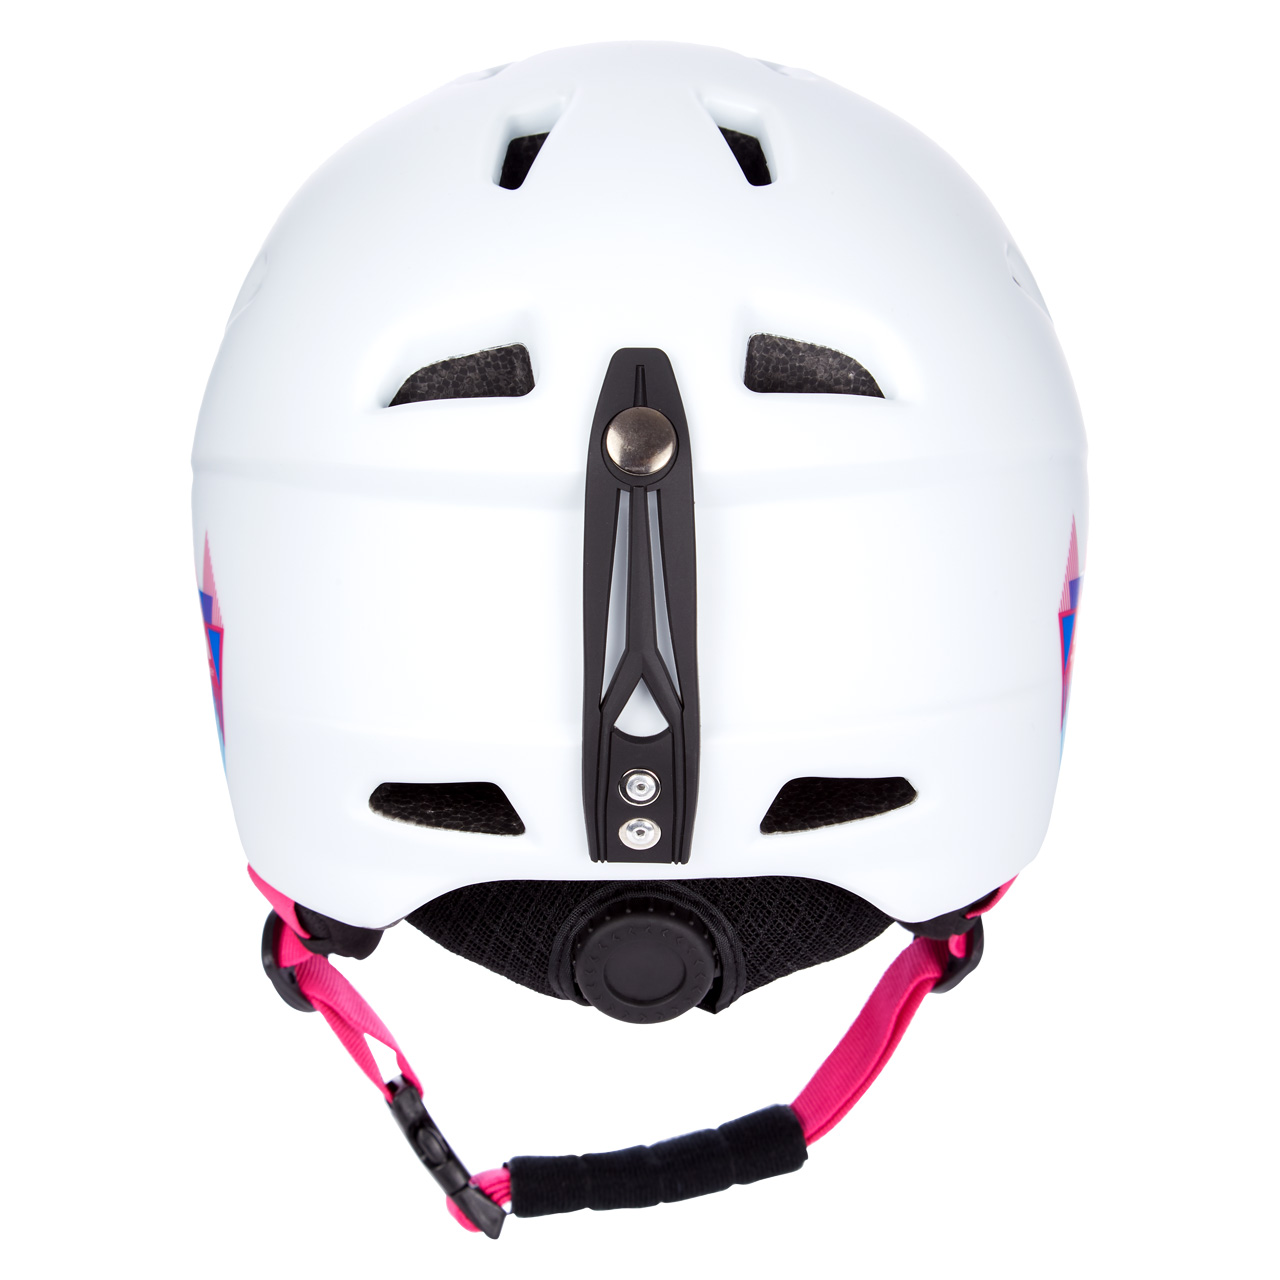 Kinder Ski Helm Pulse HS-016